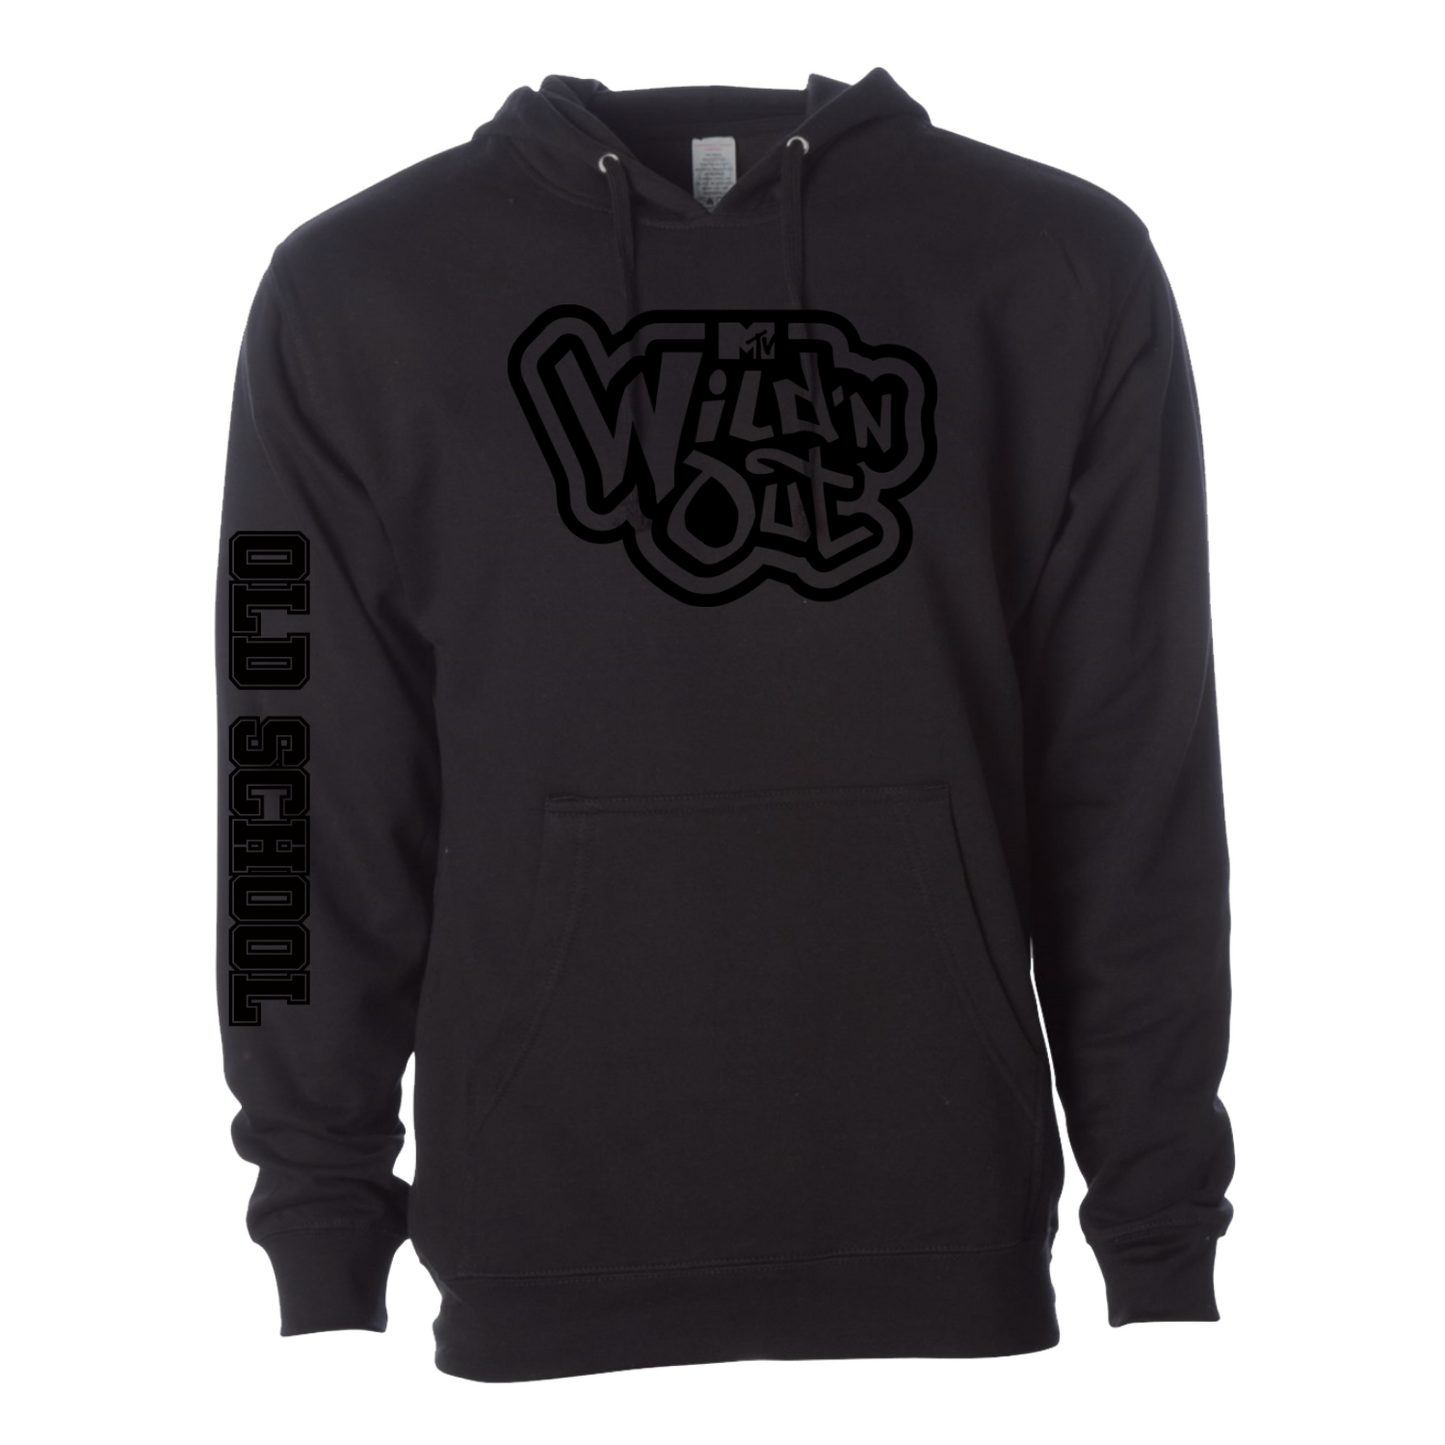 Wild 'N Out Black on Black Old School Side Hooded Sweatshirt